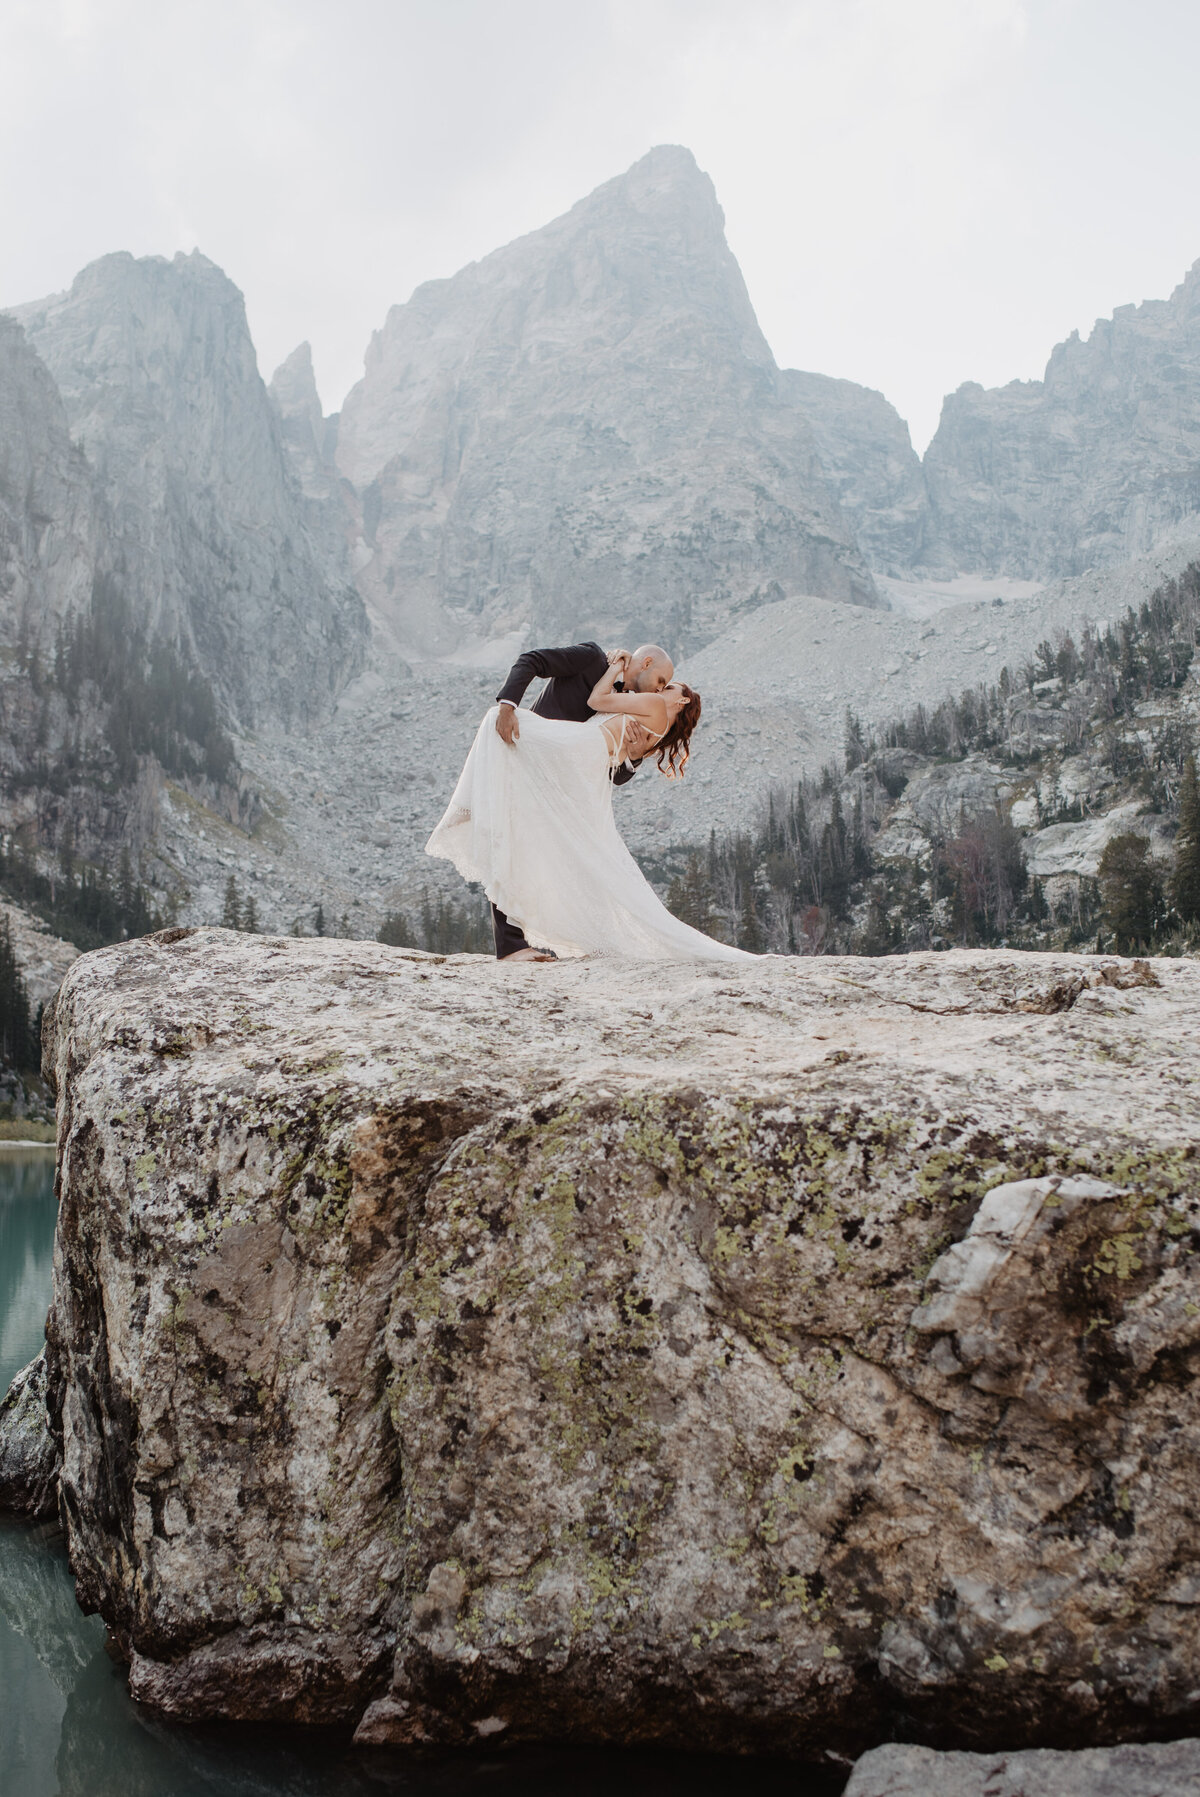 Jackson Hole photographers capture dip kiss after elopement ceremony